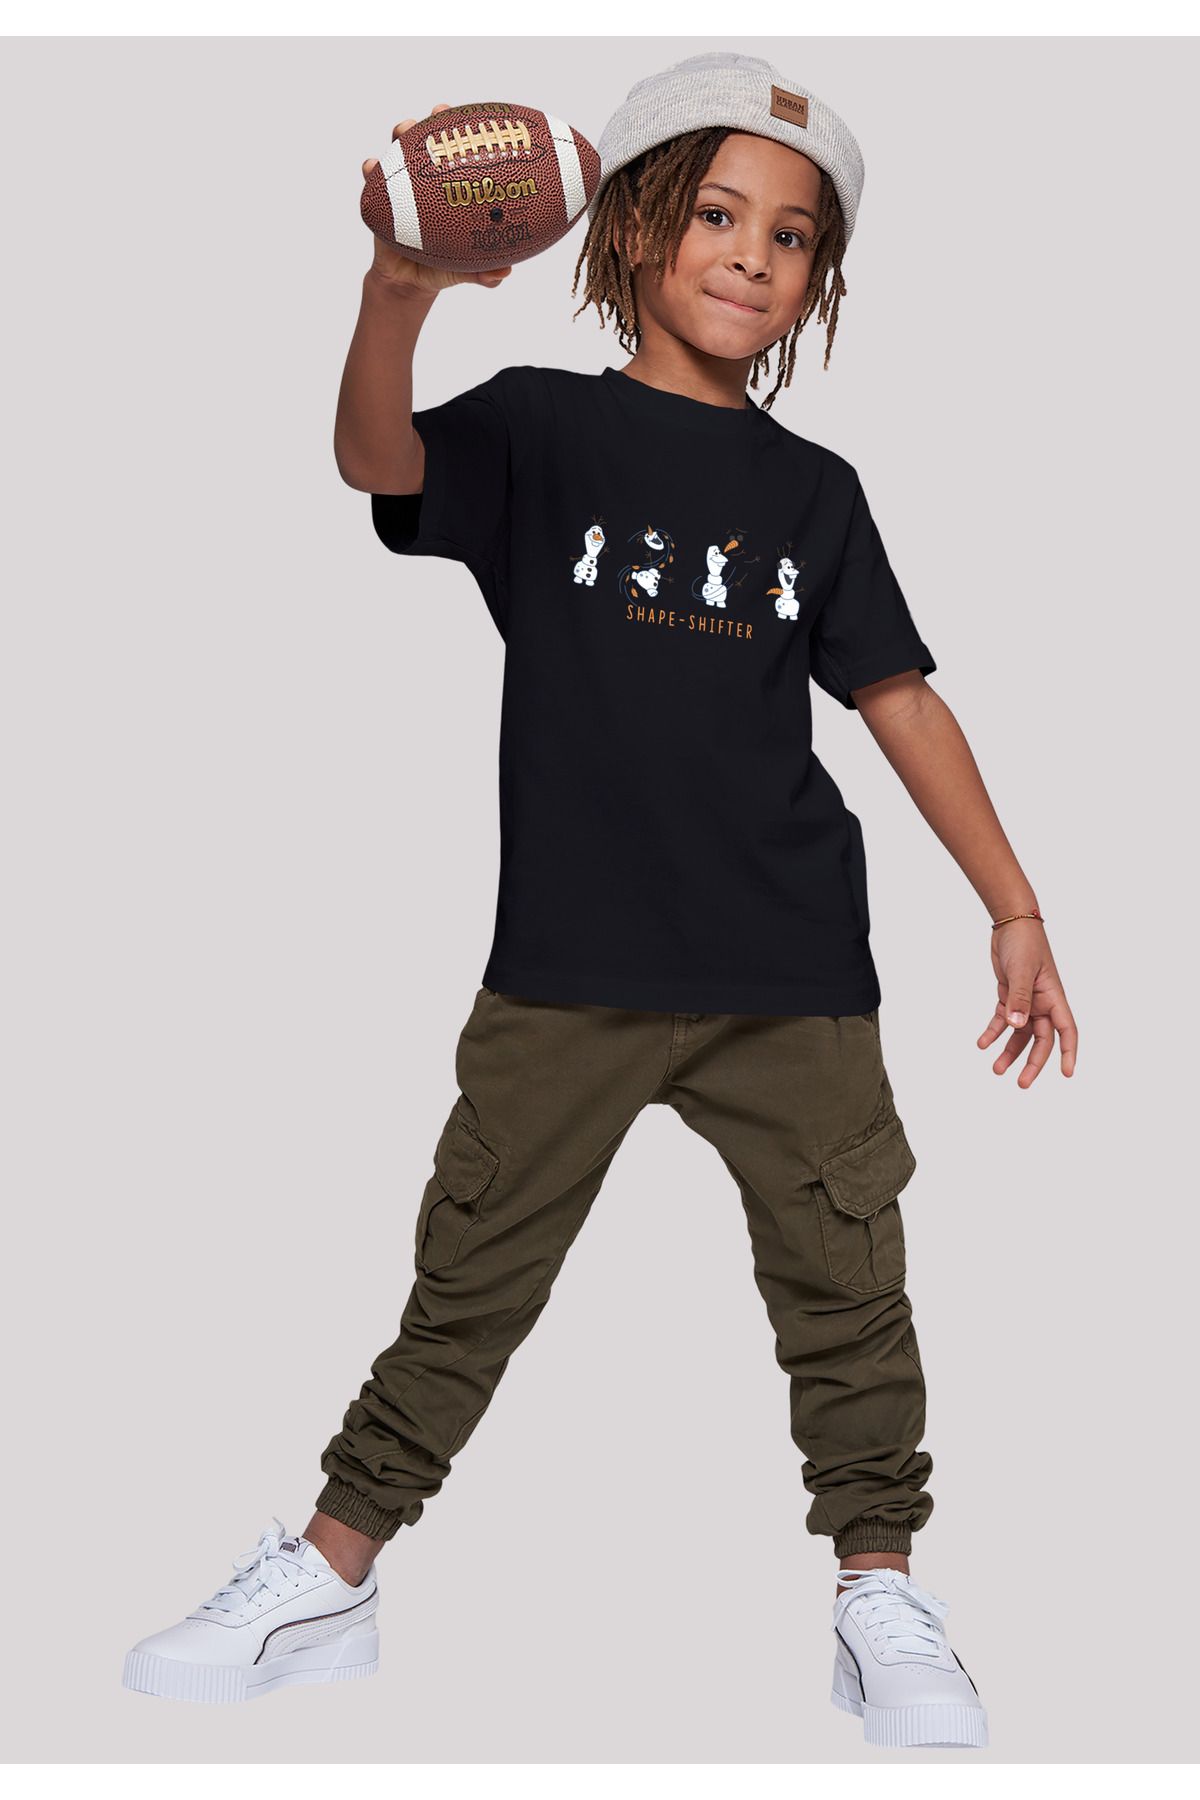 F4NT4STIC Kinder Disney Frozen 2 T-Shirt Kids Shape-Shifter mit Trendyol Basic Olaf 